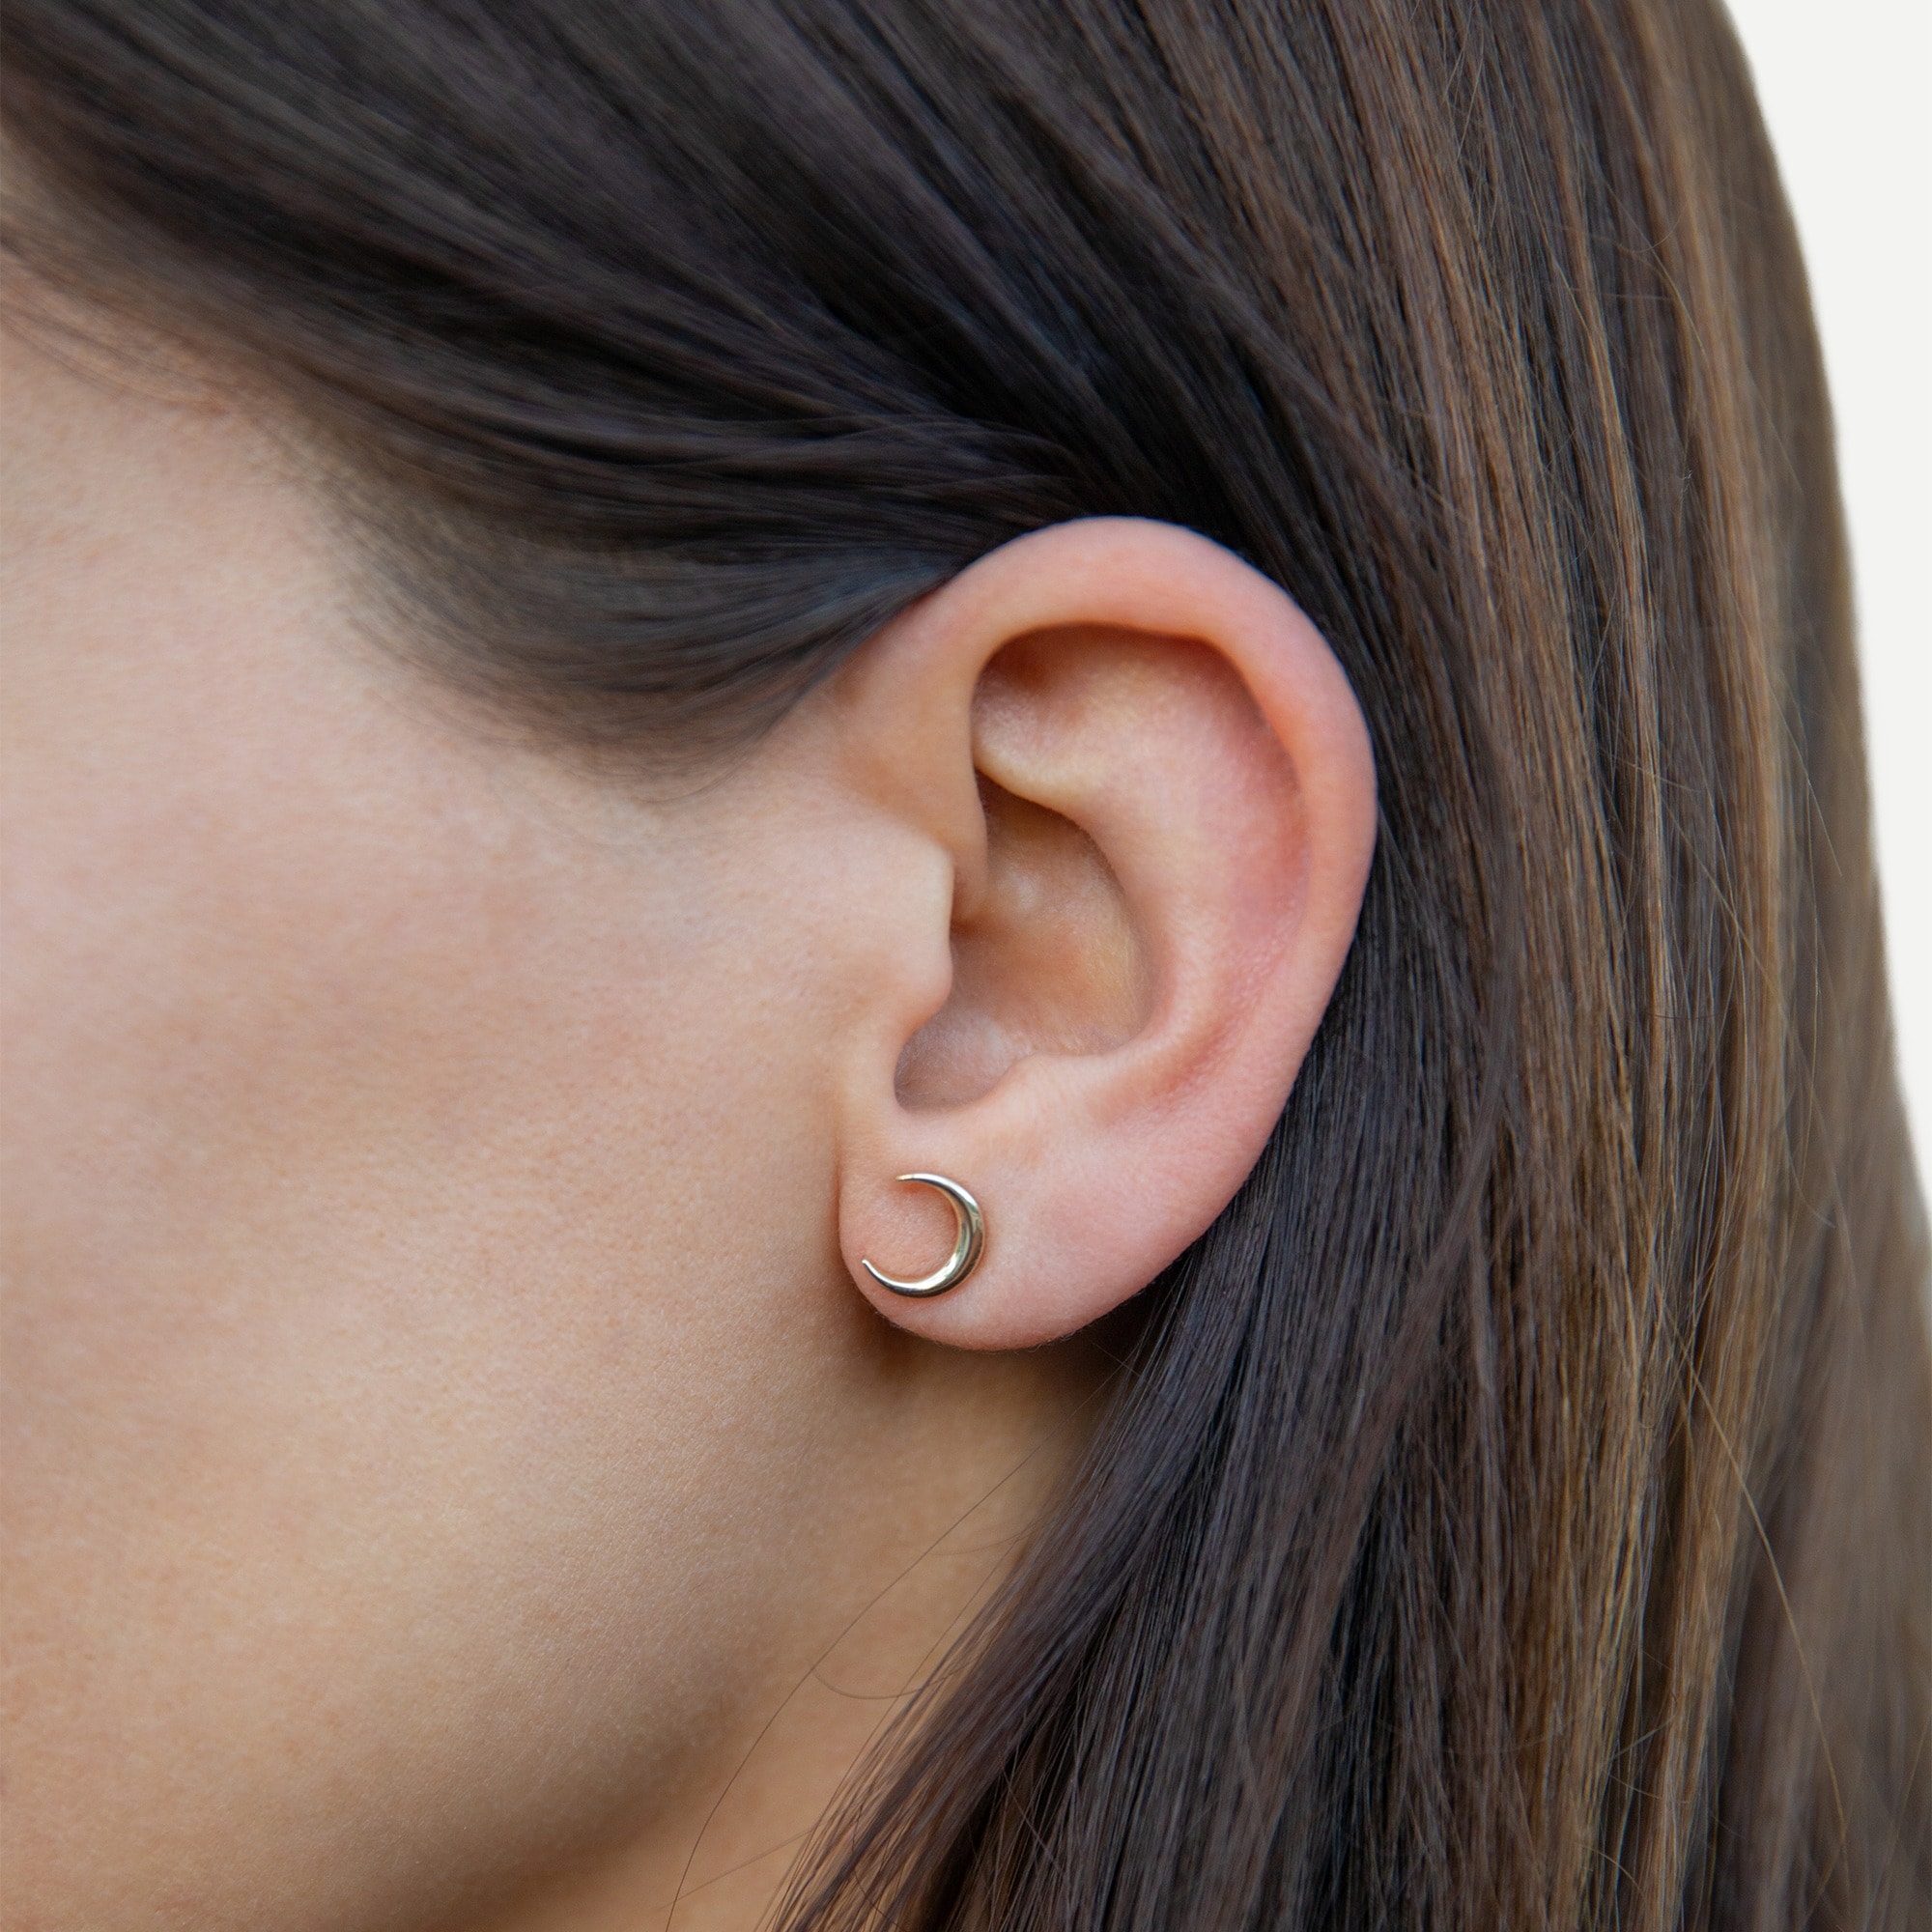 J.Crew: TALON JEWELRY Crescent Moon Stud Earrings For Women